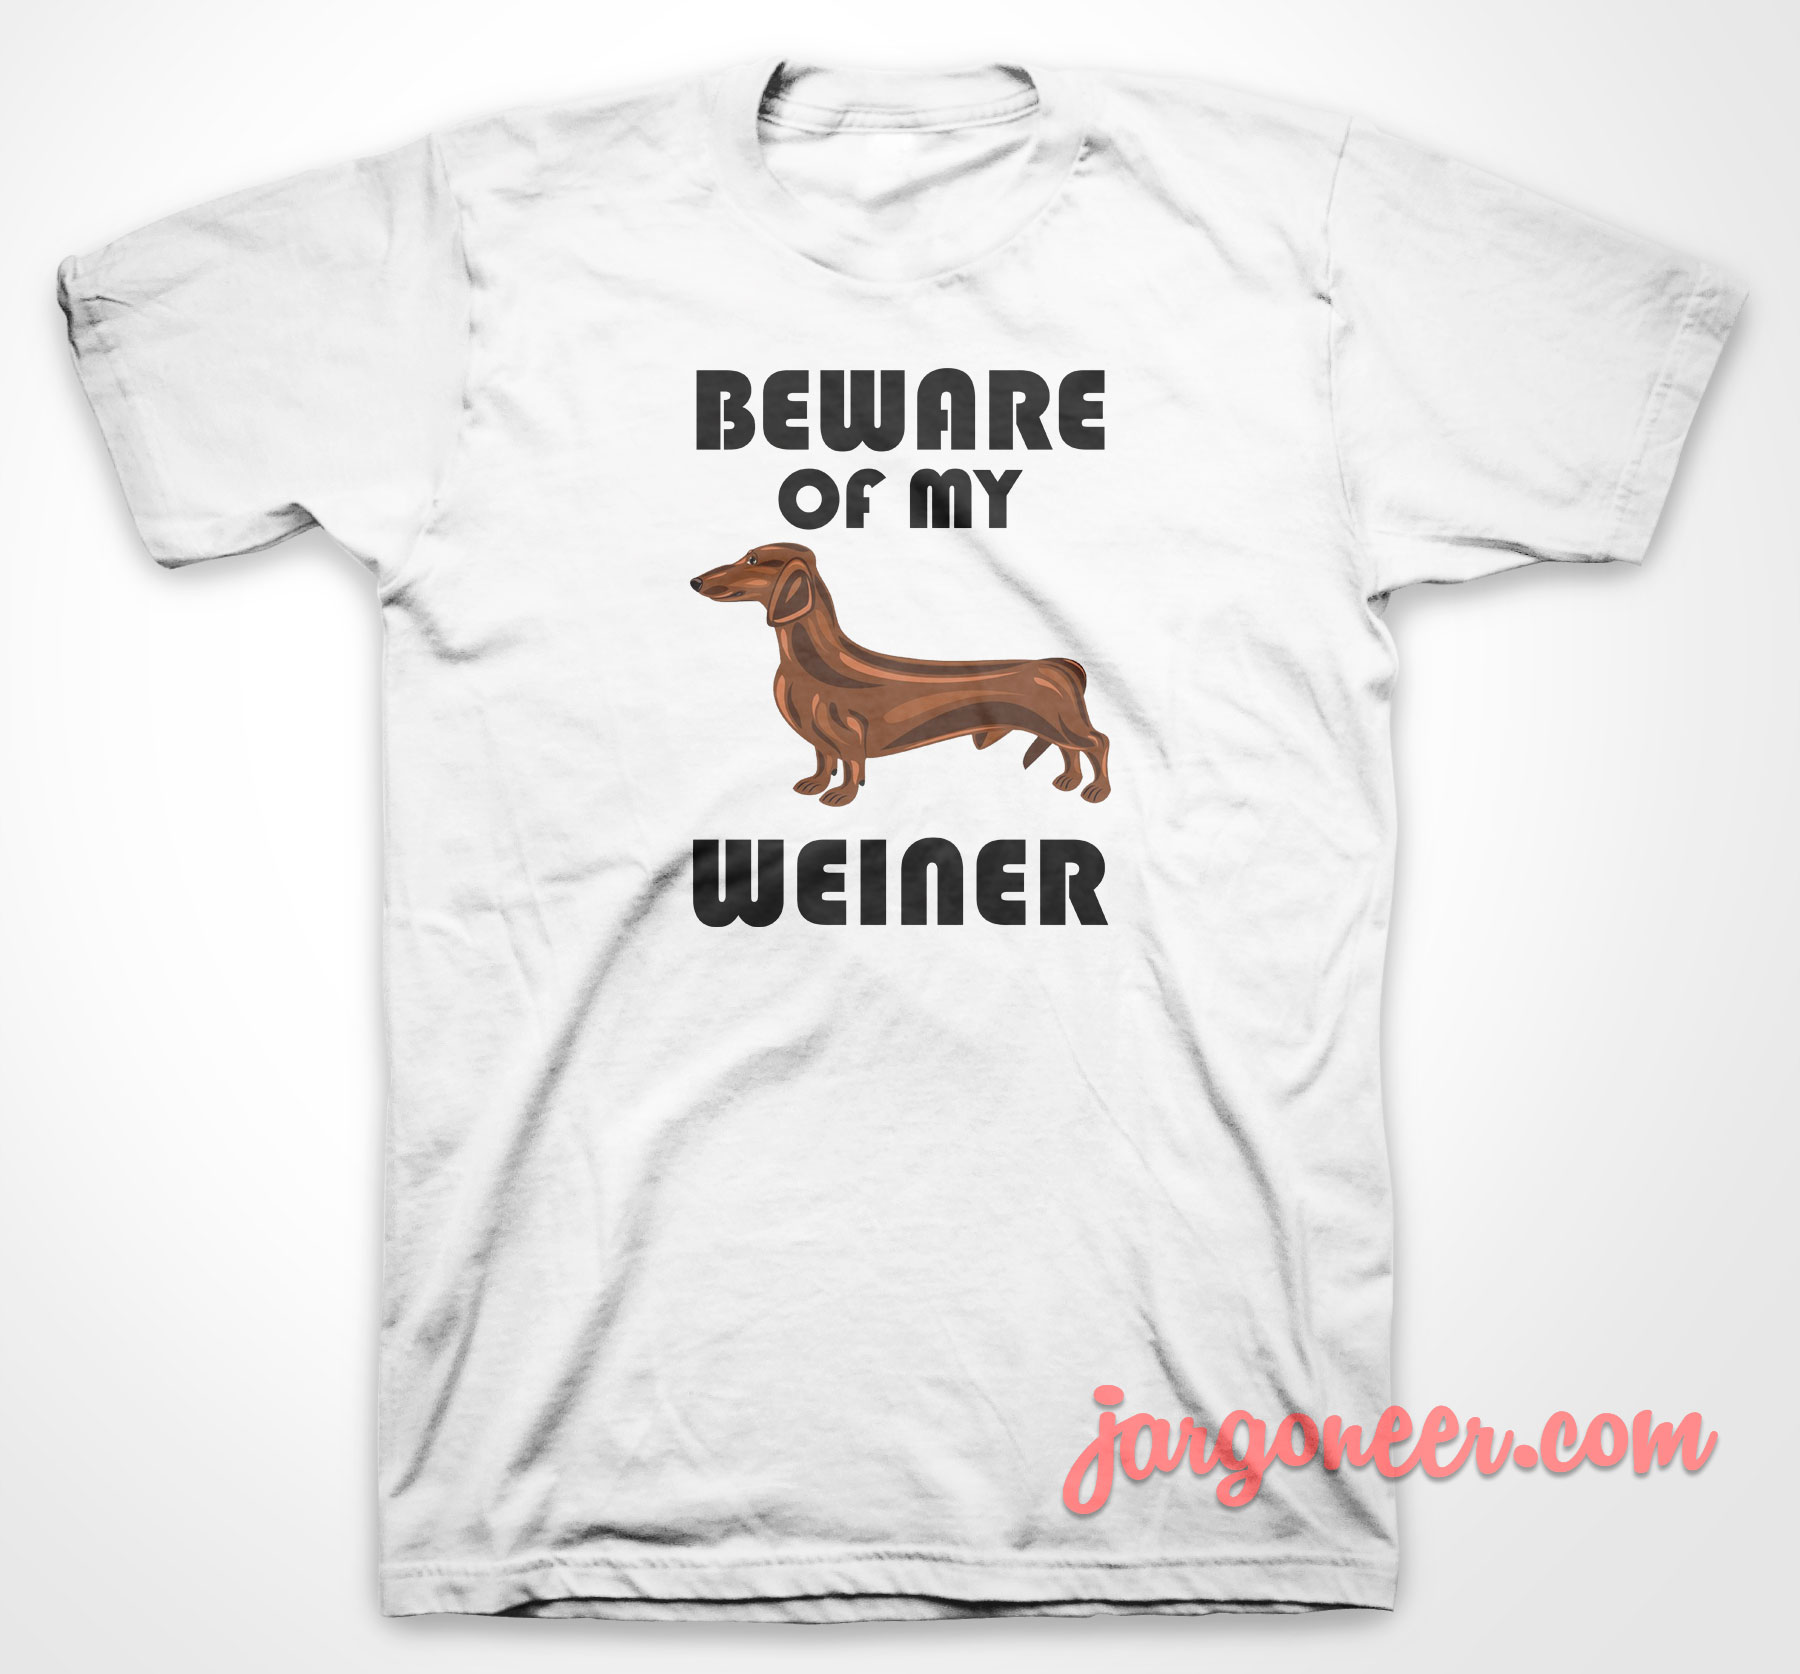 Beware Of My Weiner 3 - Shop Unique Graphic Cool Shirt Designs